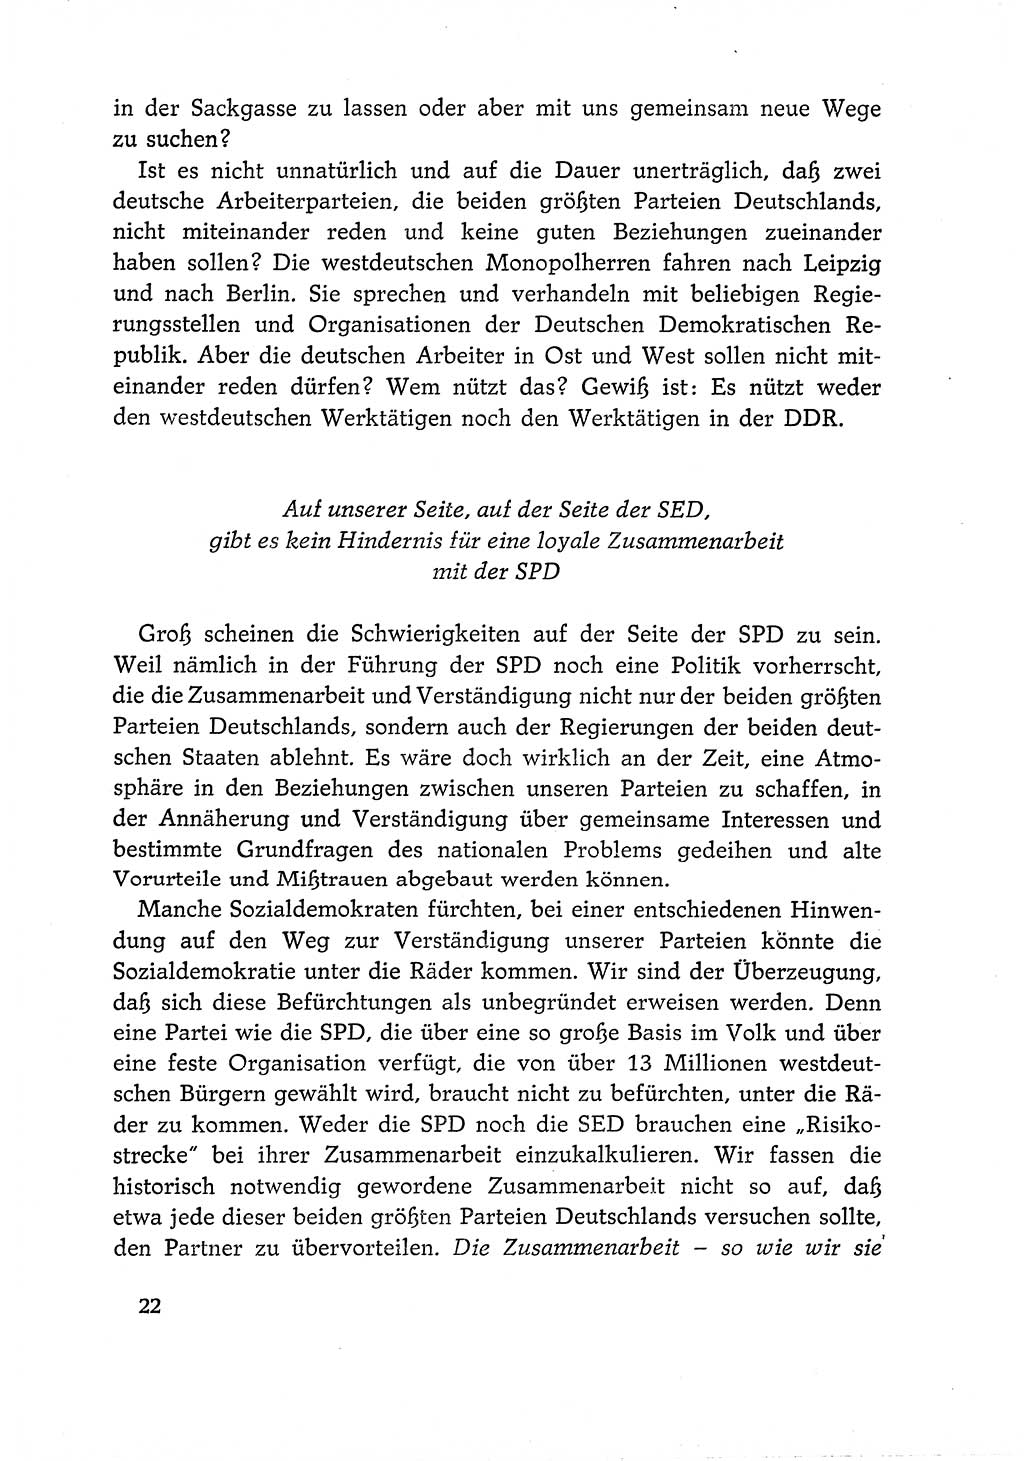 Dokumente der Sozialistischen Einheitspartei Deutschlands (SED) [Deutsche Demokratische Republik (DDR)] 1966-1967, Seite 22 (Dok. SED DDR 1966-1967, S. 22)